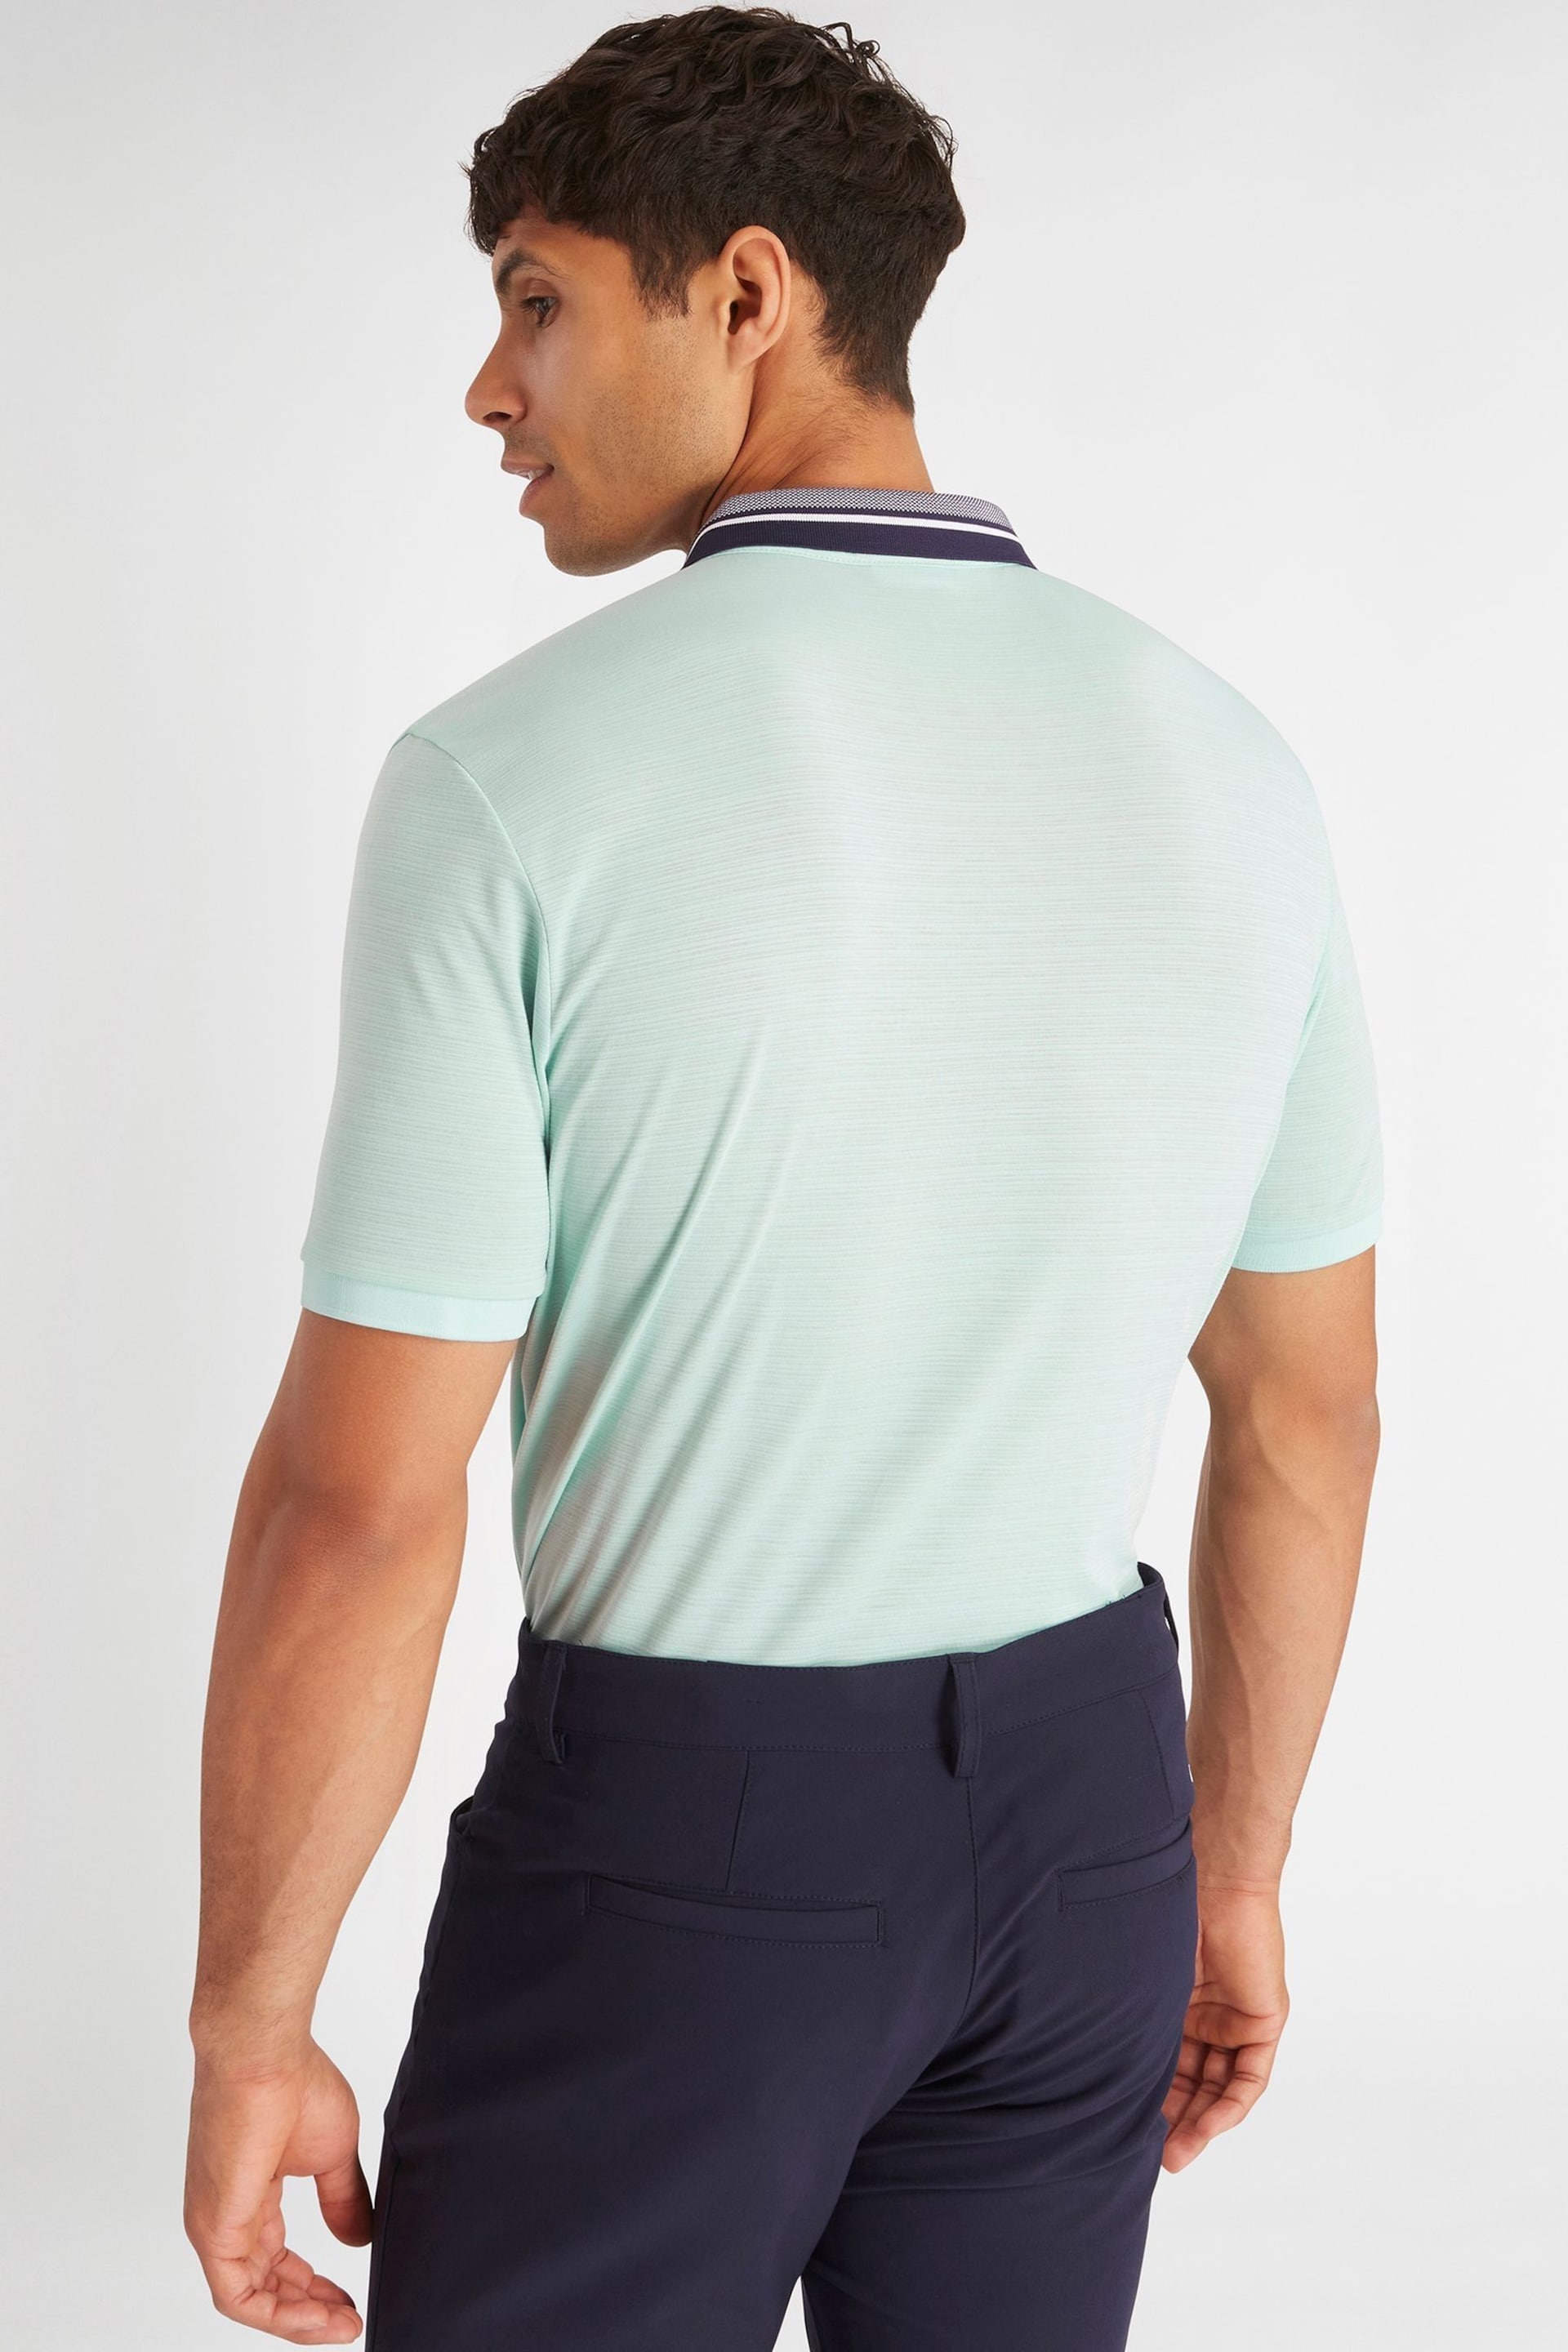 Calvin Klein Golf Navy Parramore Polo Shirt - Image 6 of 12